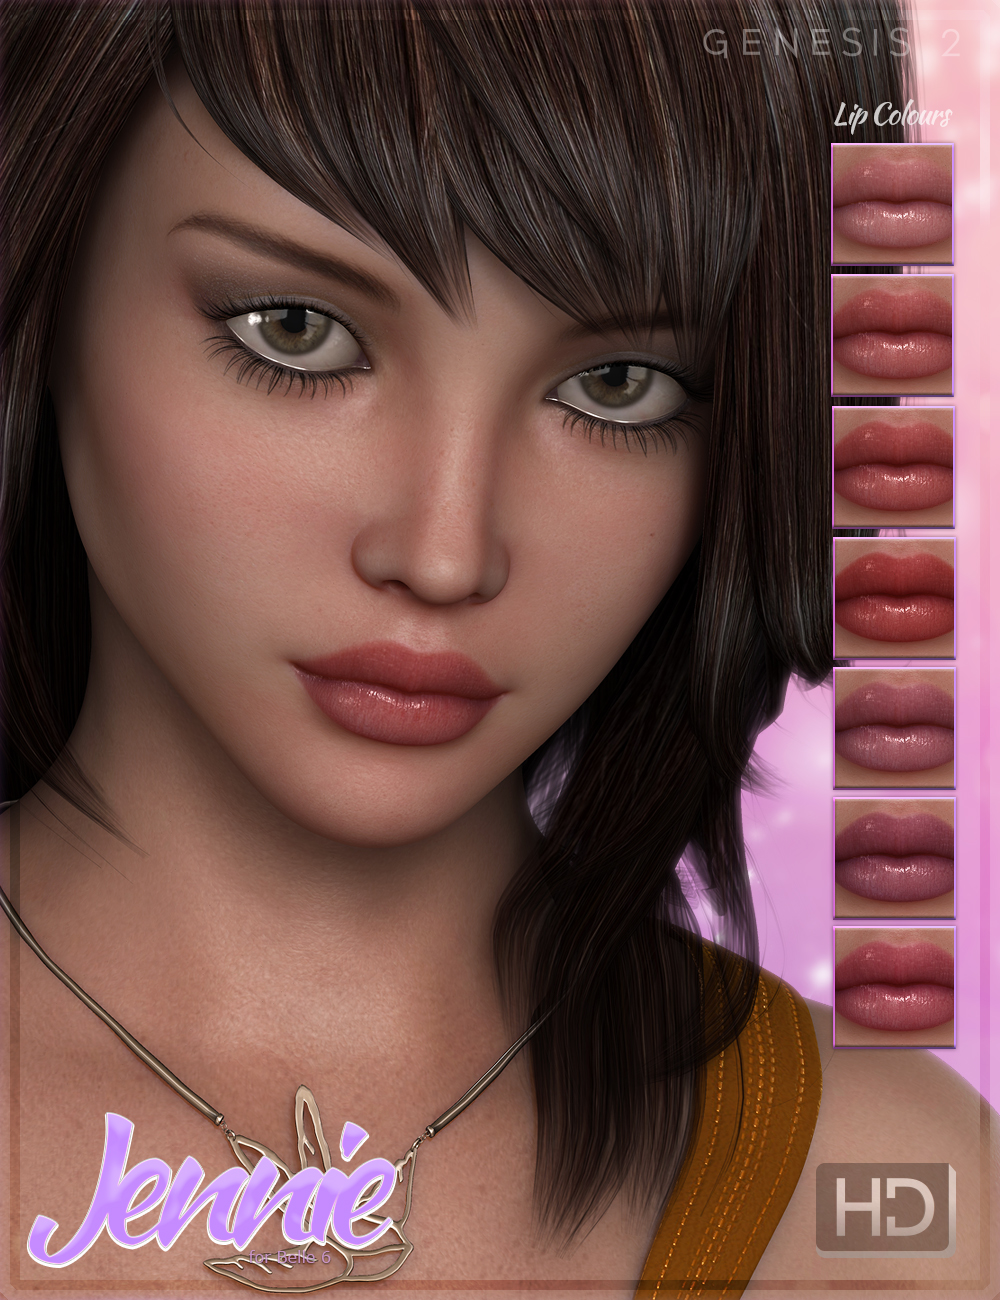 FW Jennie HD for Belle 6 by: Fred Winkler Art, 3D Models by Daz 3D